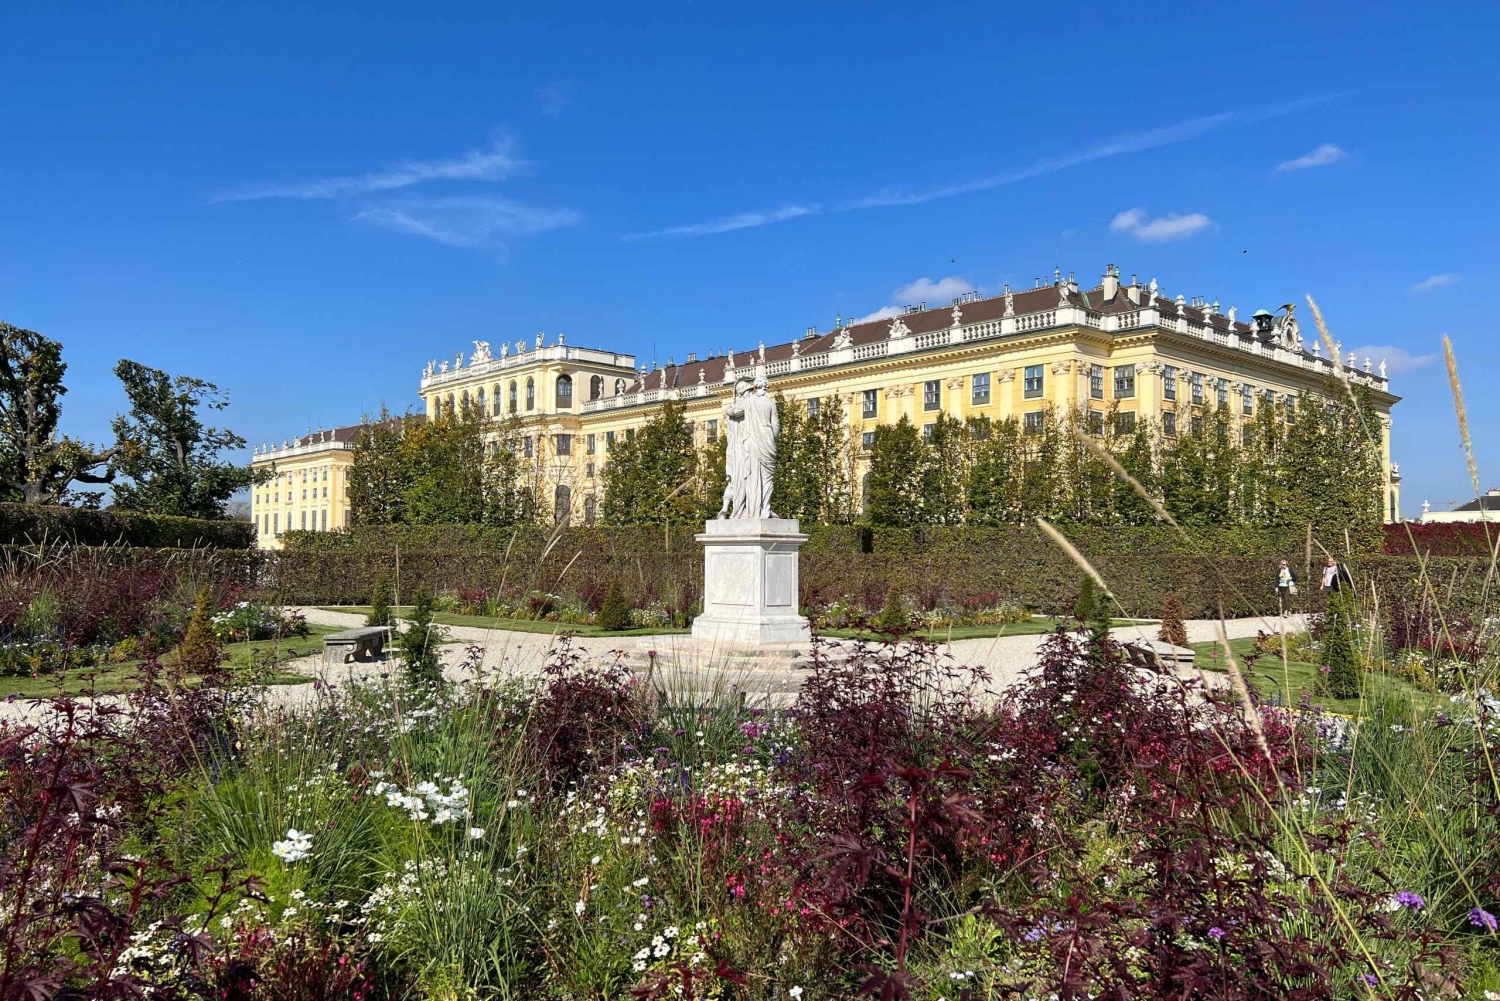 Viena: Excursão particular ao Palácio de Schönbrunn, quartos extras, jardins